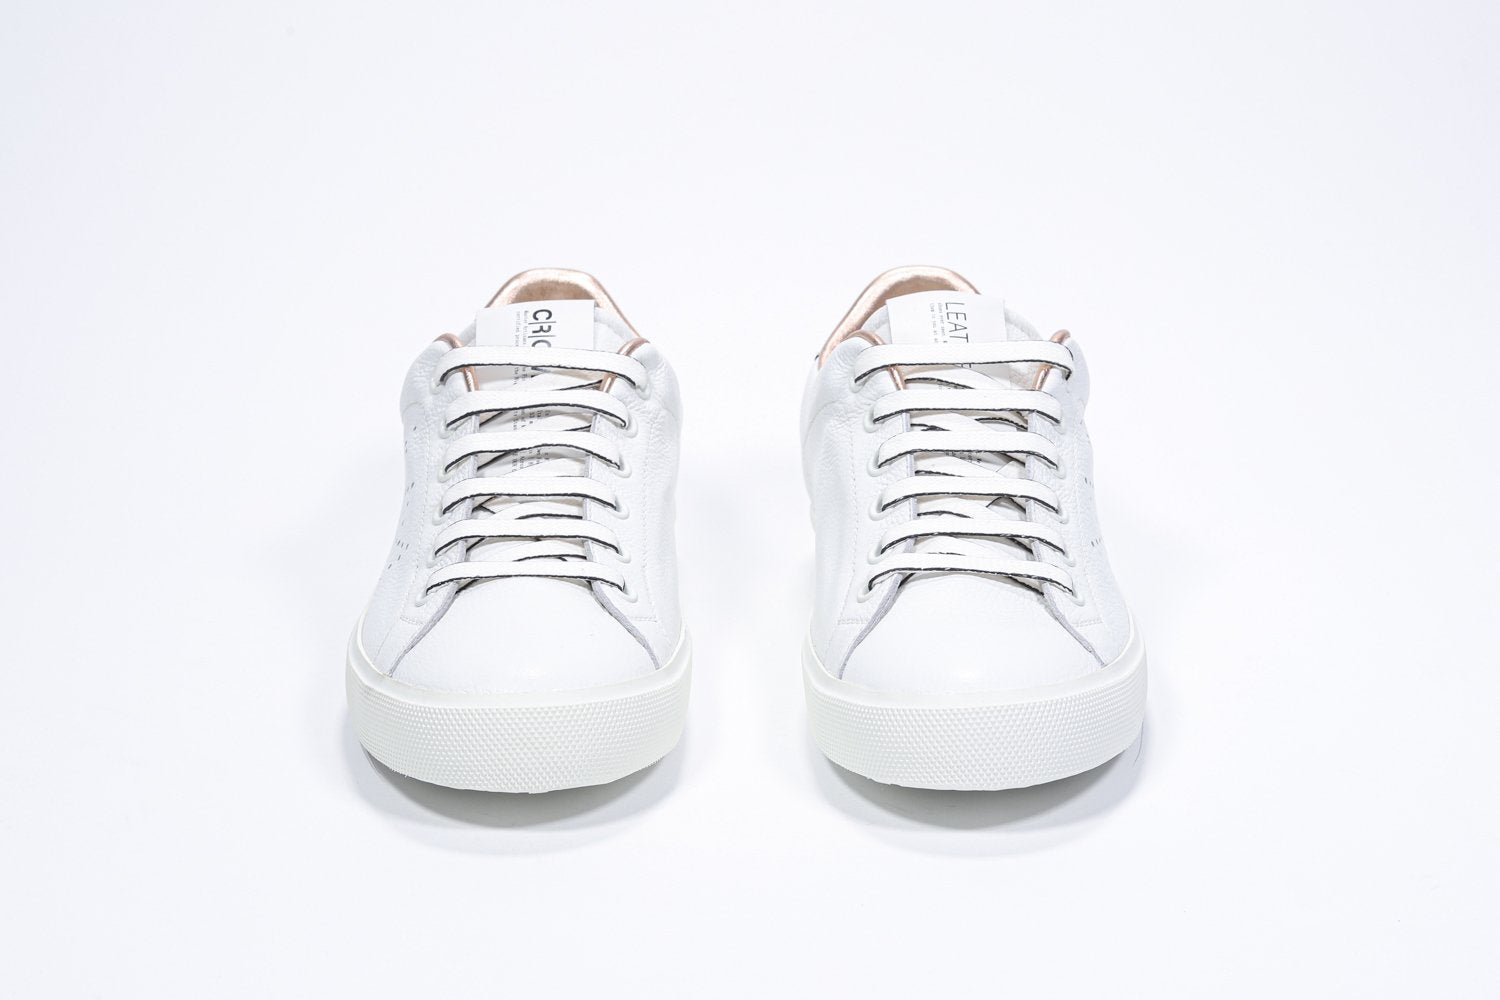 Vue de face de la chaussure blanche sneaker avec des détails métalliques or rose et le logo perforé de la couronne sur la tige. Tige en cuir et semelle en caoutchouc blanc.